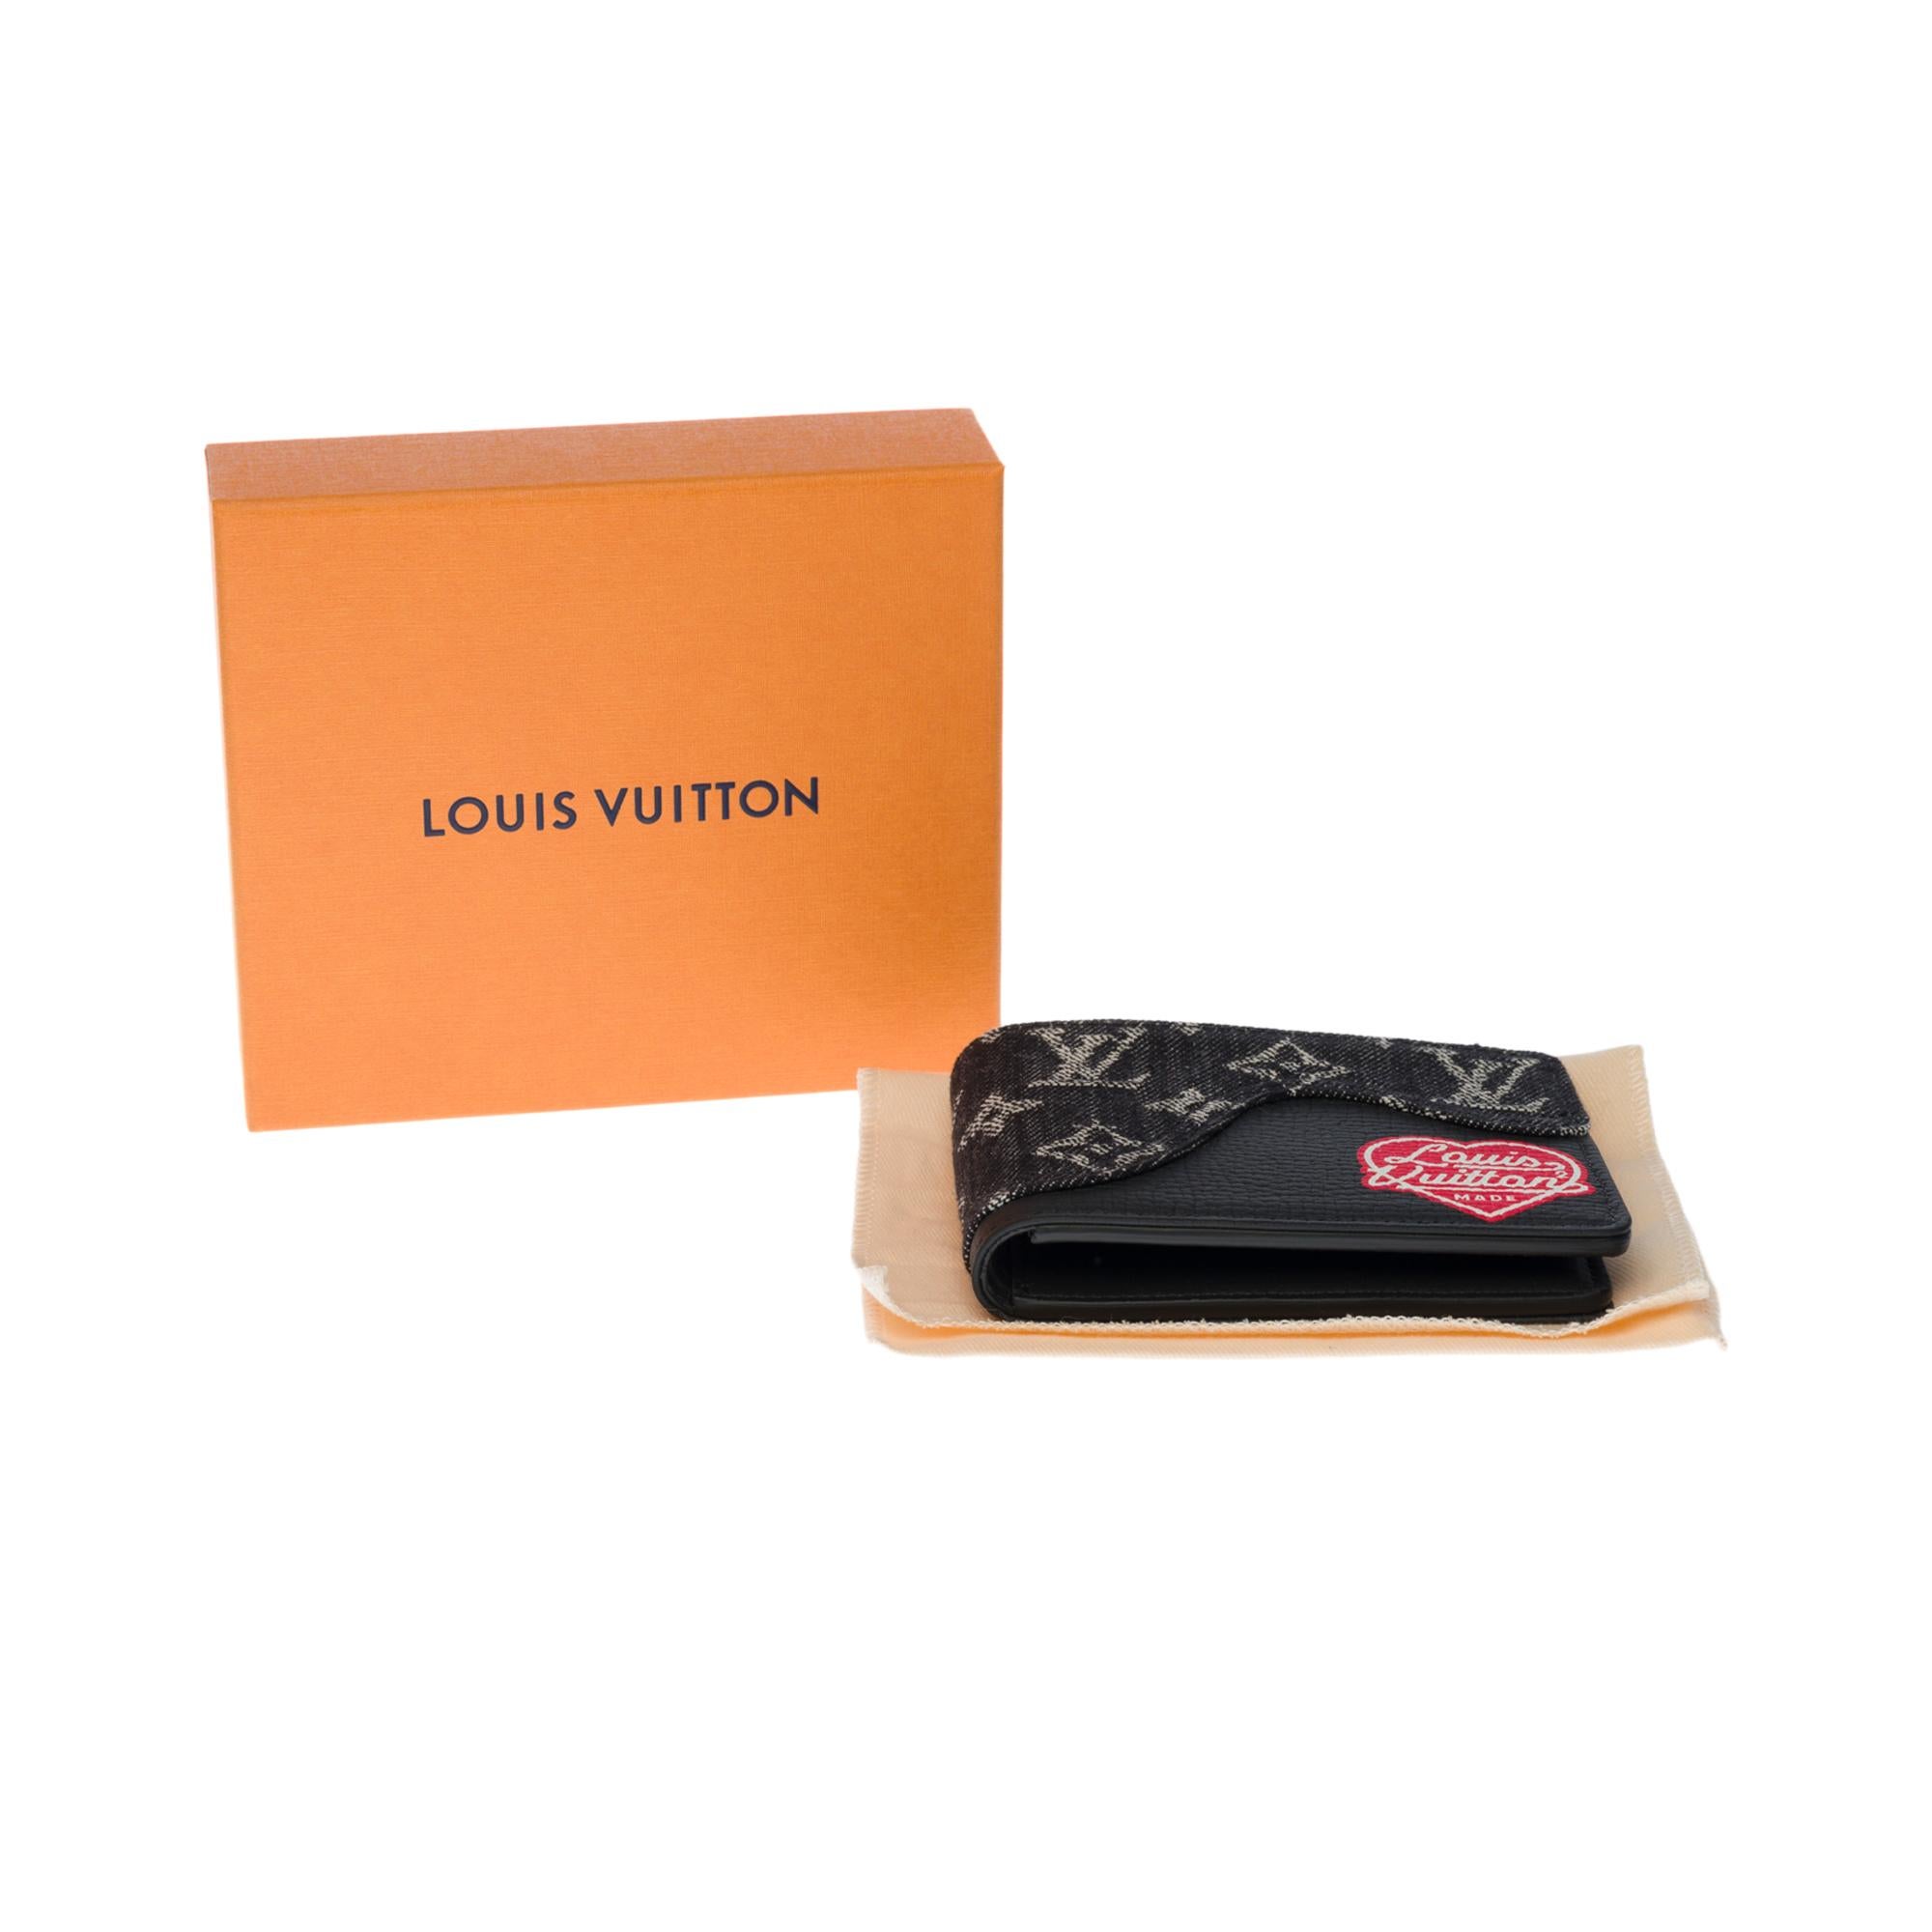 BRAND NEW- Limited edition Louis Vuitton Slender Wallet in black denim by Nigo 2